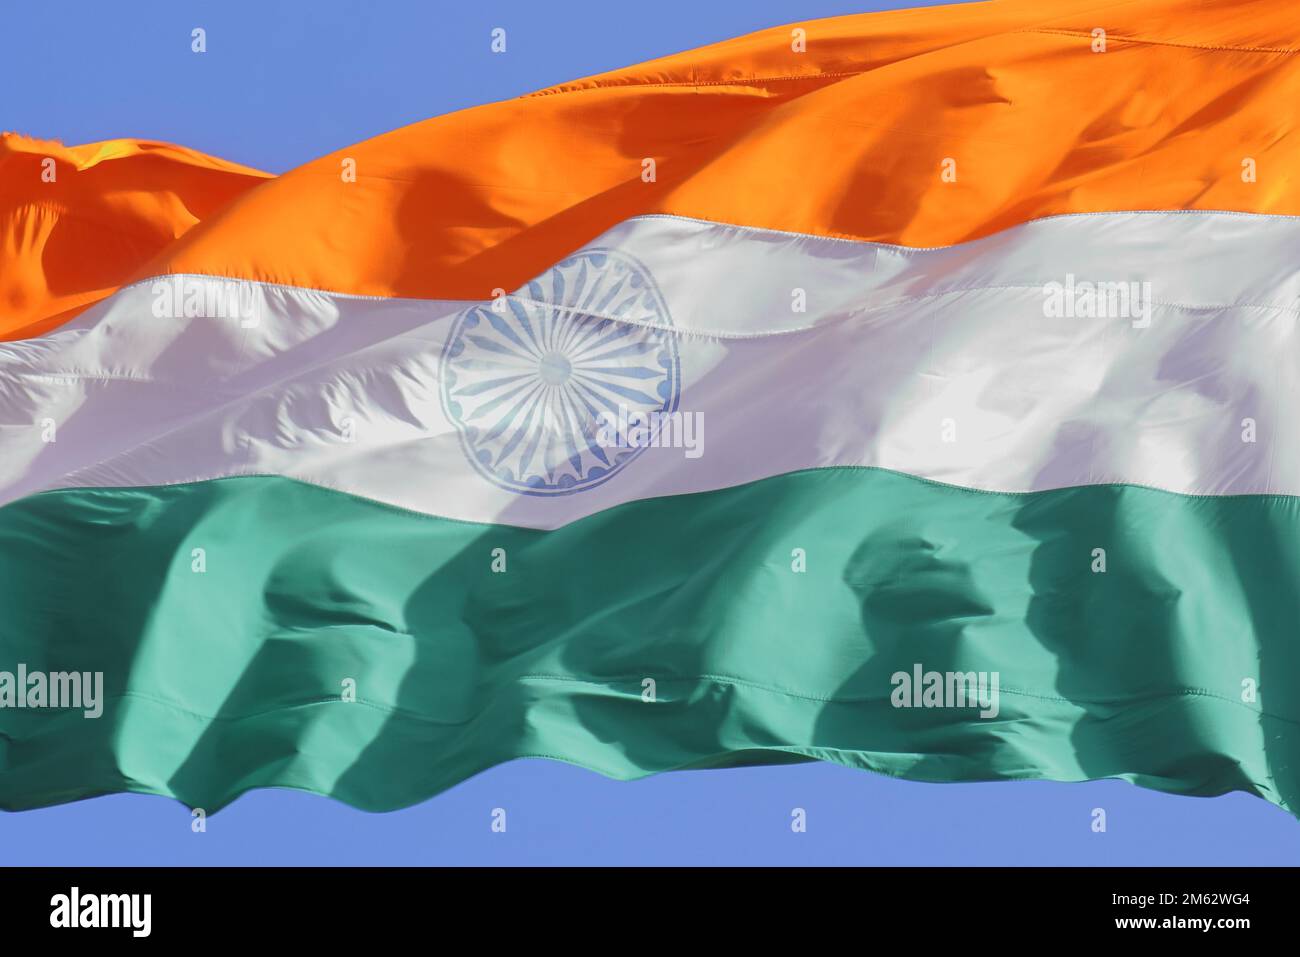 drapeau indien tricolore volant dans le vent près de la frontière chinoise de l'inde près du doklam. bonne république de l'inde Banque D'Images